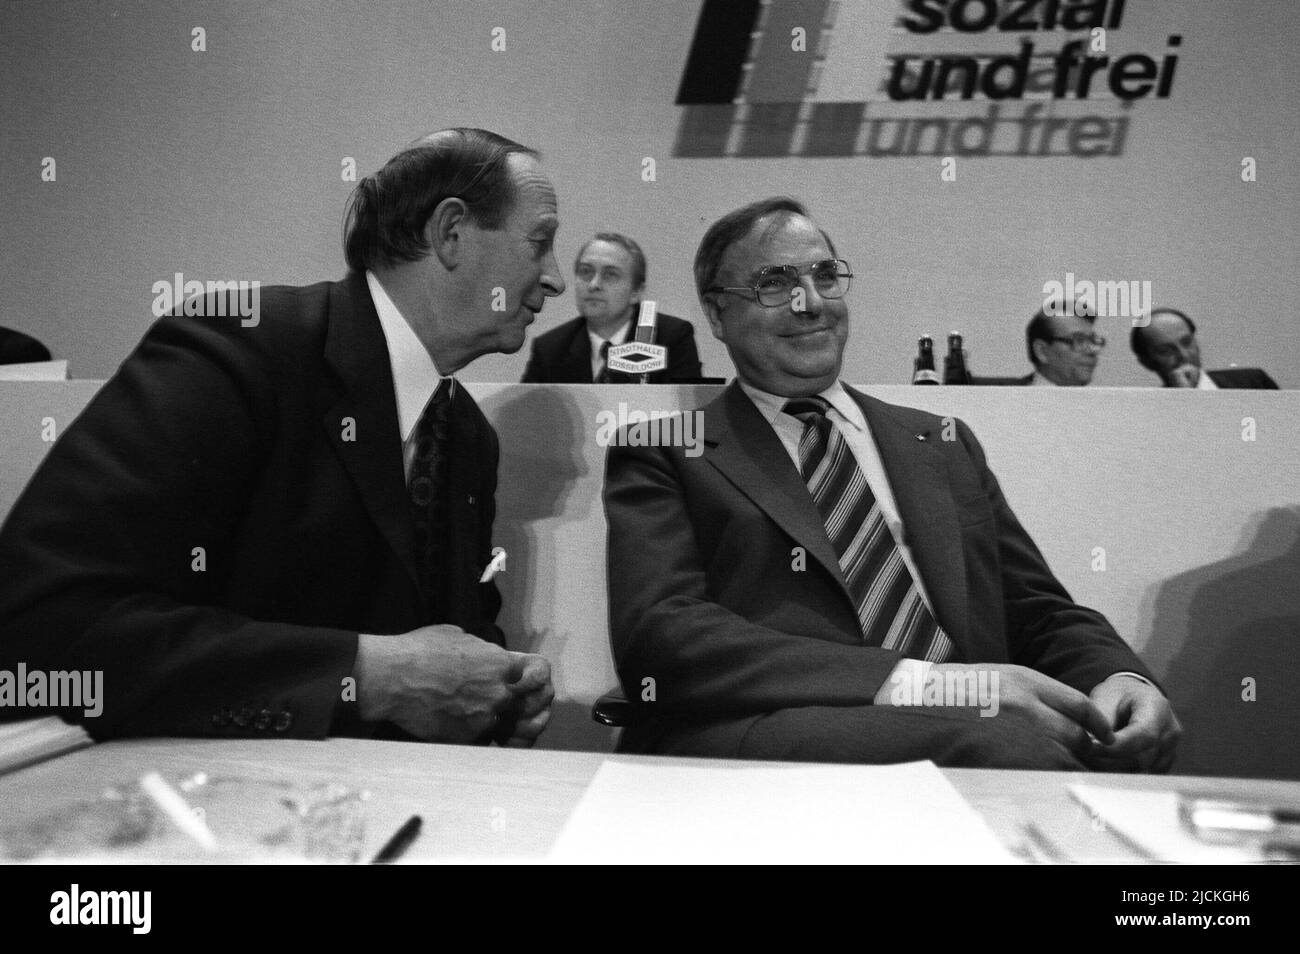 FOTO D'ARCHIVIO: 5 anni fa, il 16 giugno 2017, Helmut KOHL, Hans FILBINGER, Germania, politico, CDU, primo ministro del Baden-Wuerttemberg è morto con Helmut KOHL re. Conferenza del partito CDU 1977 a Duesseldorf Foto Stock